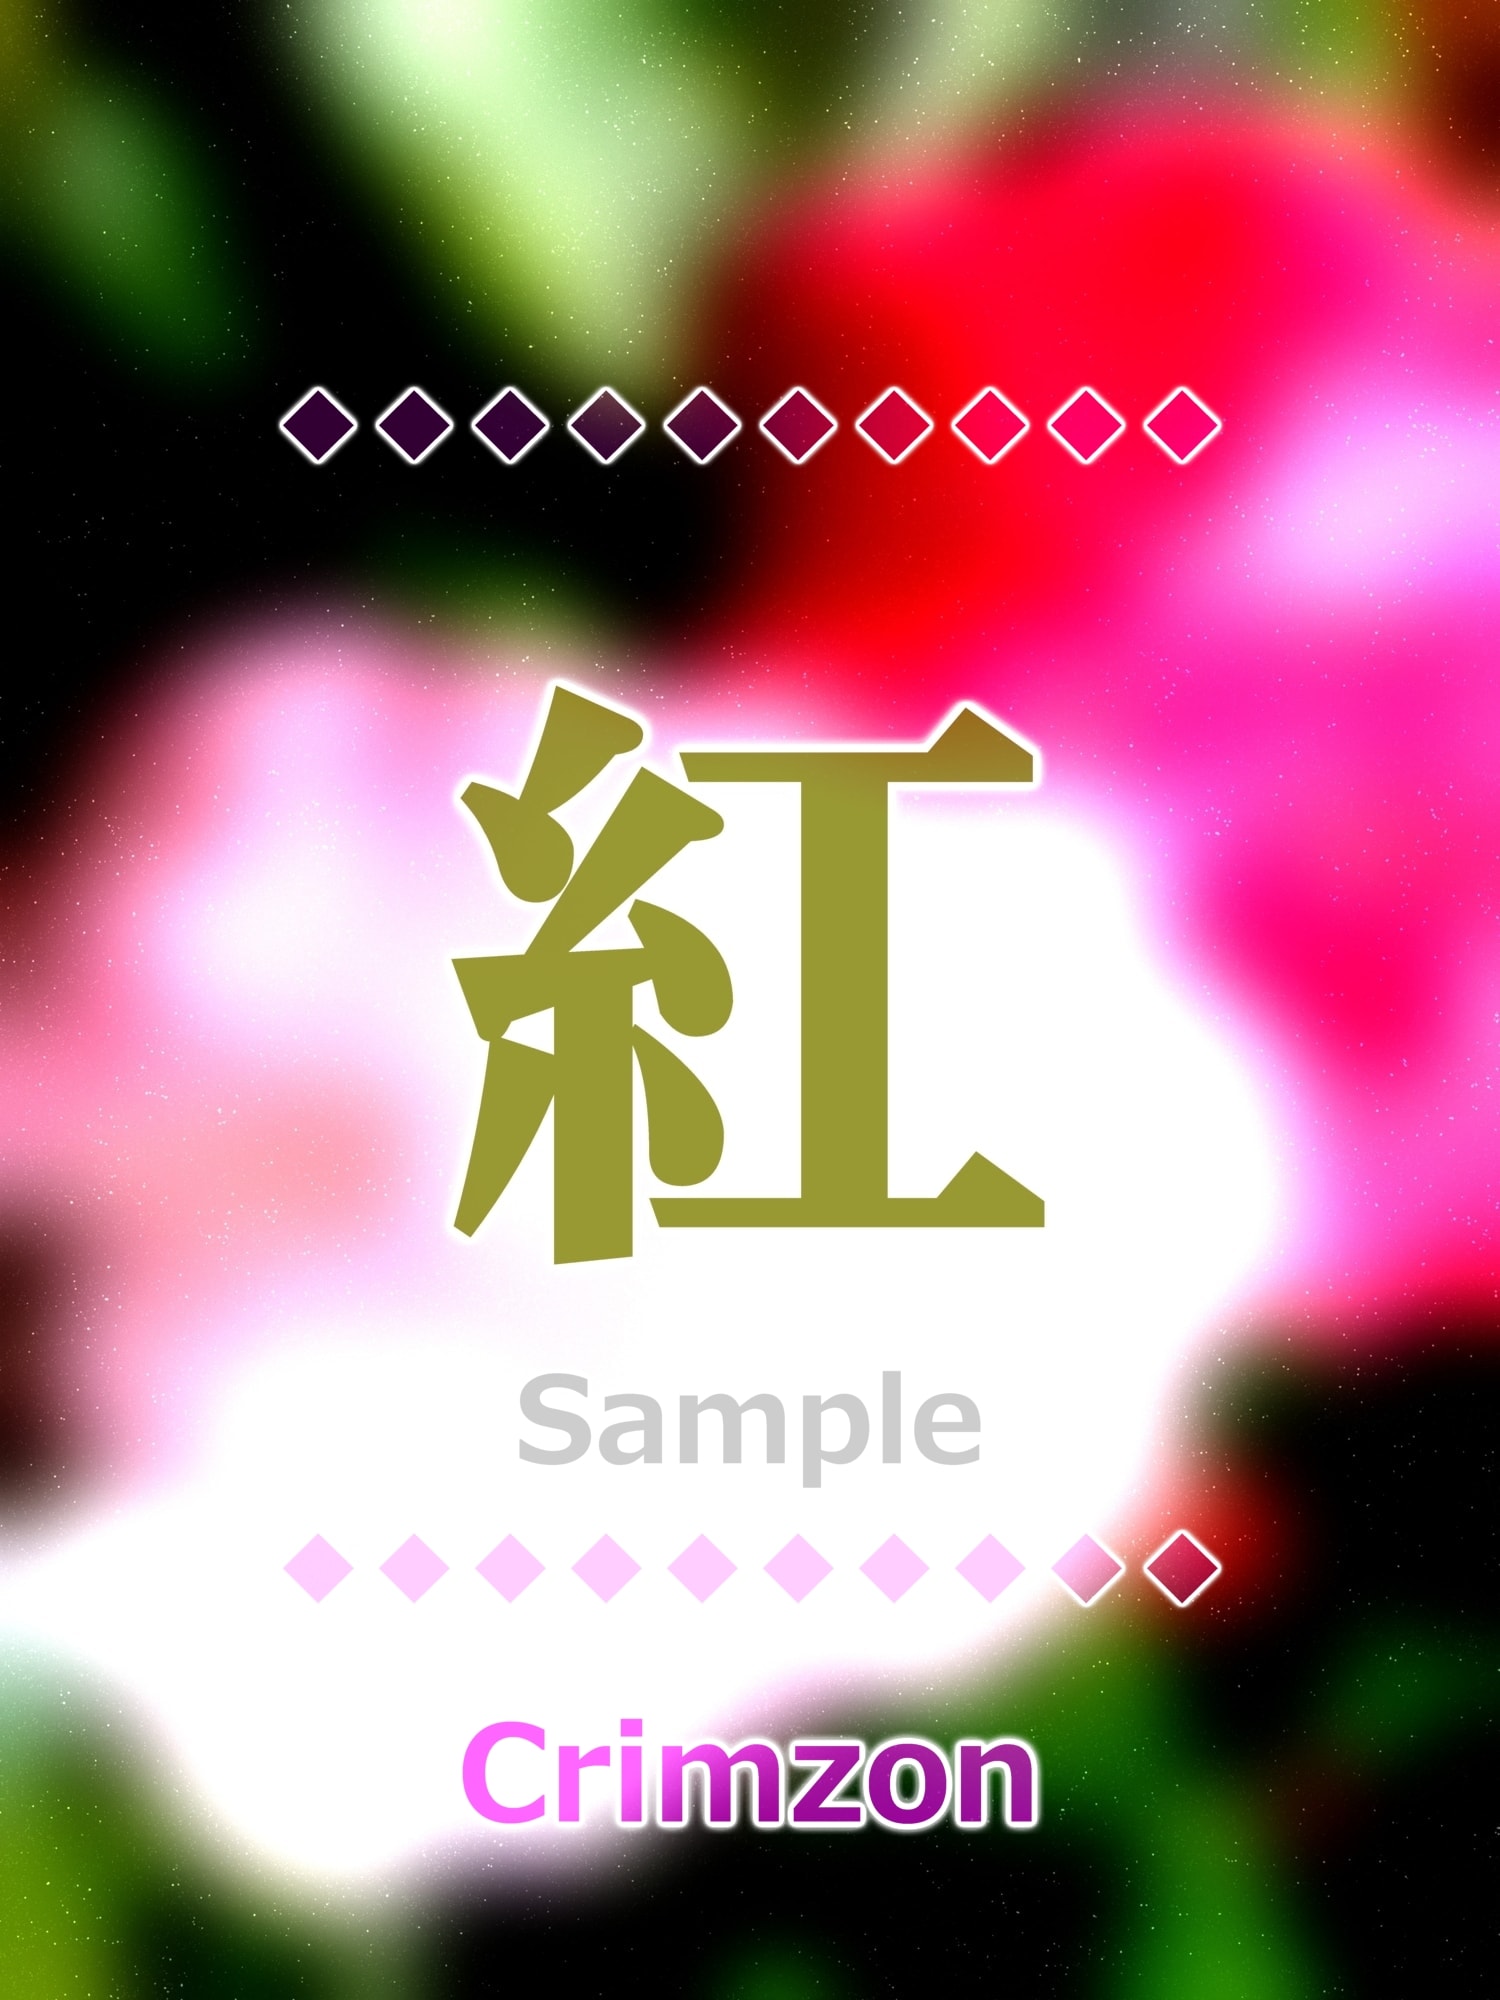 紅 crimzon Kanji good luck charm amulet art glossy